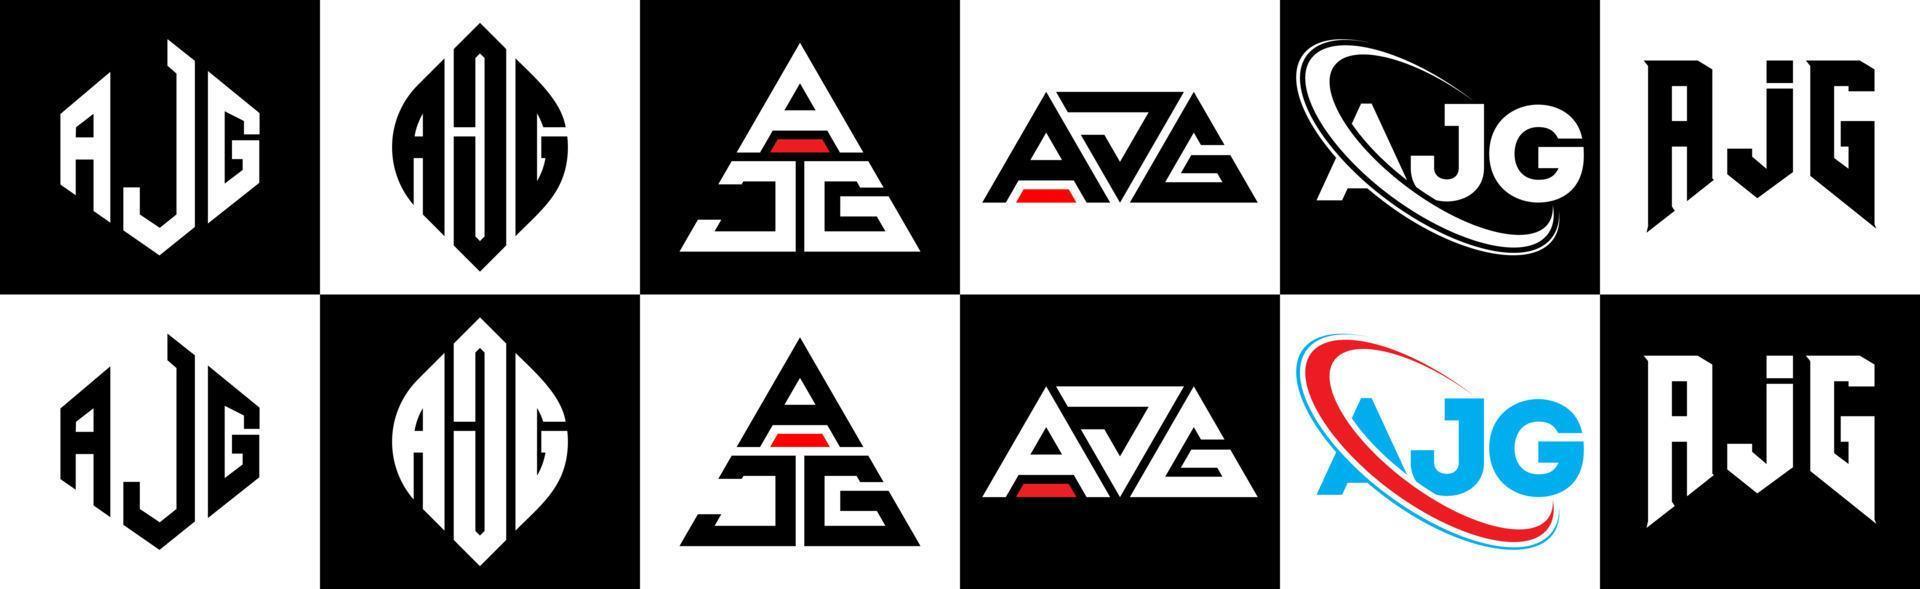 création de logo de lettre ajg en six styles. ajg polygone, cercle, triangle, hexagone, style plat et simple avec logo de lettre de variation de couleur noir et blanc dans un plan de travail. logo minimaliste et classique ajg vecteur